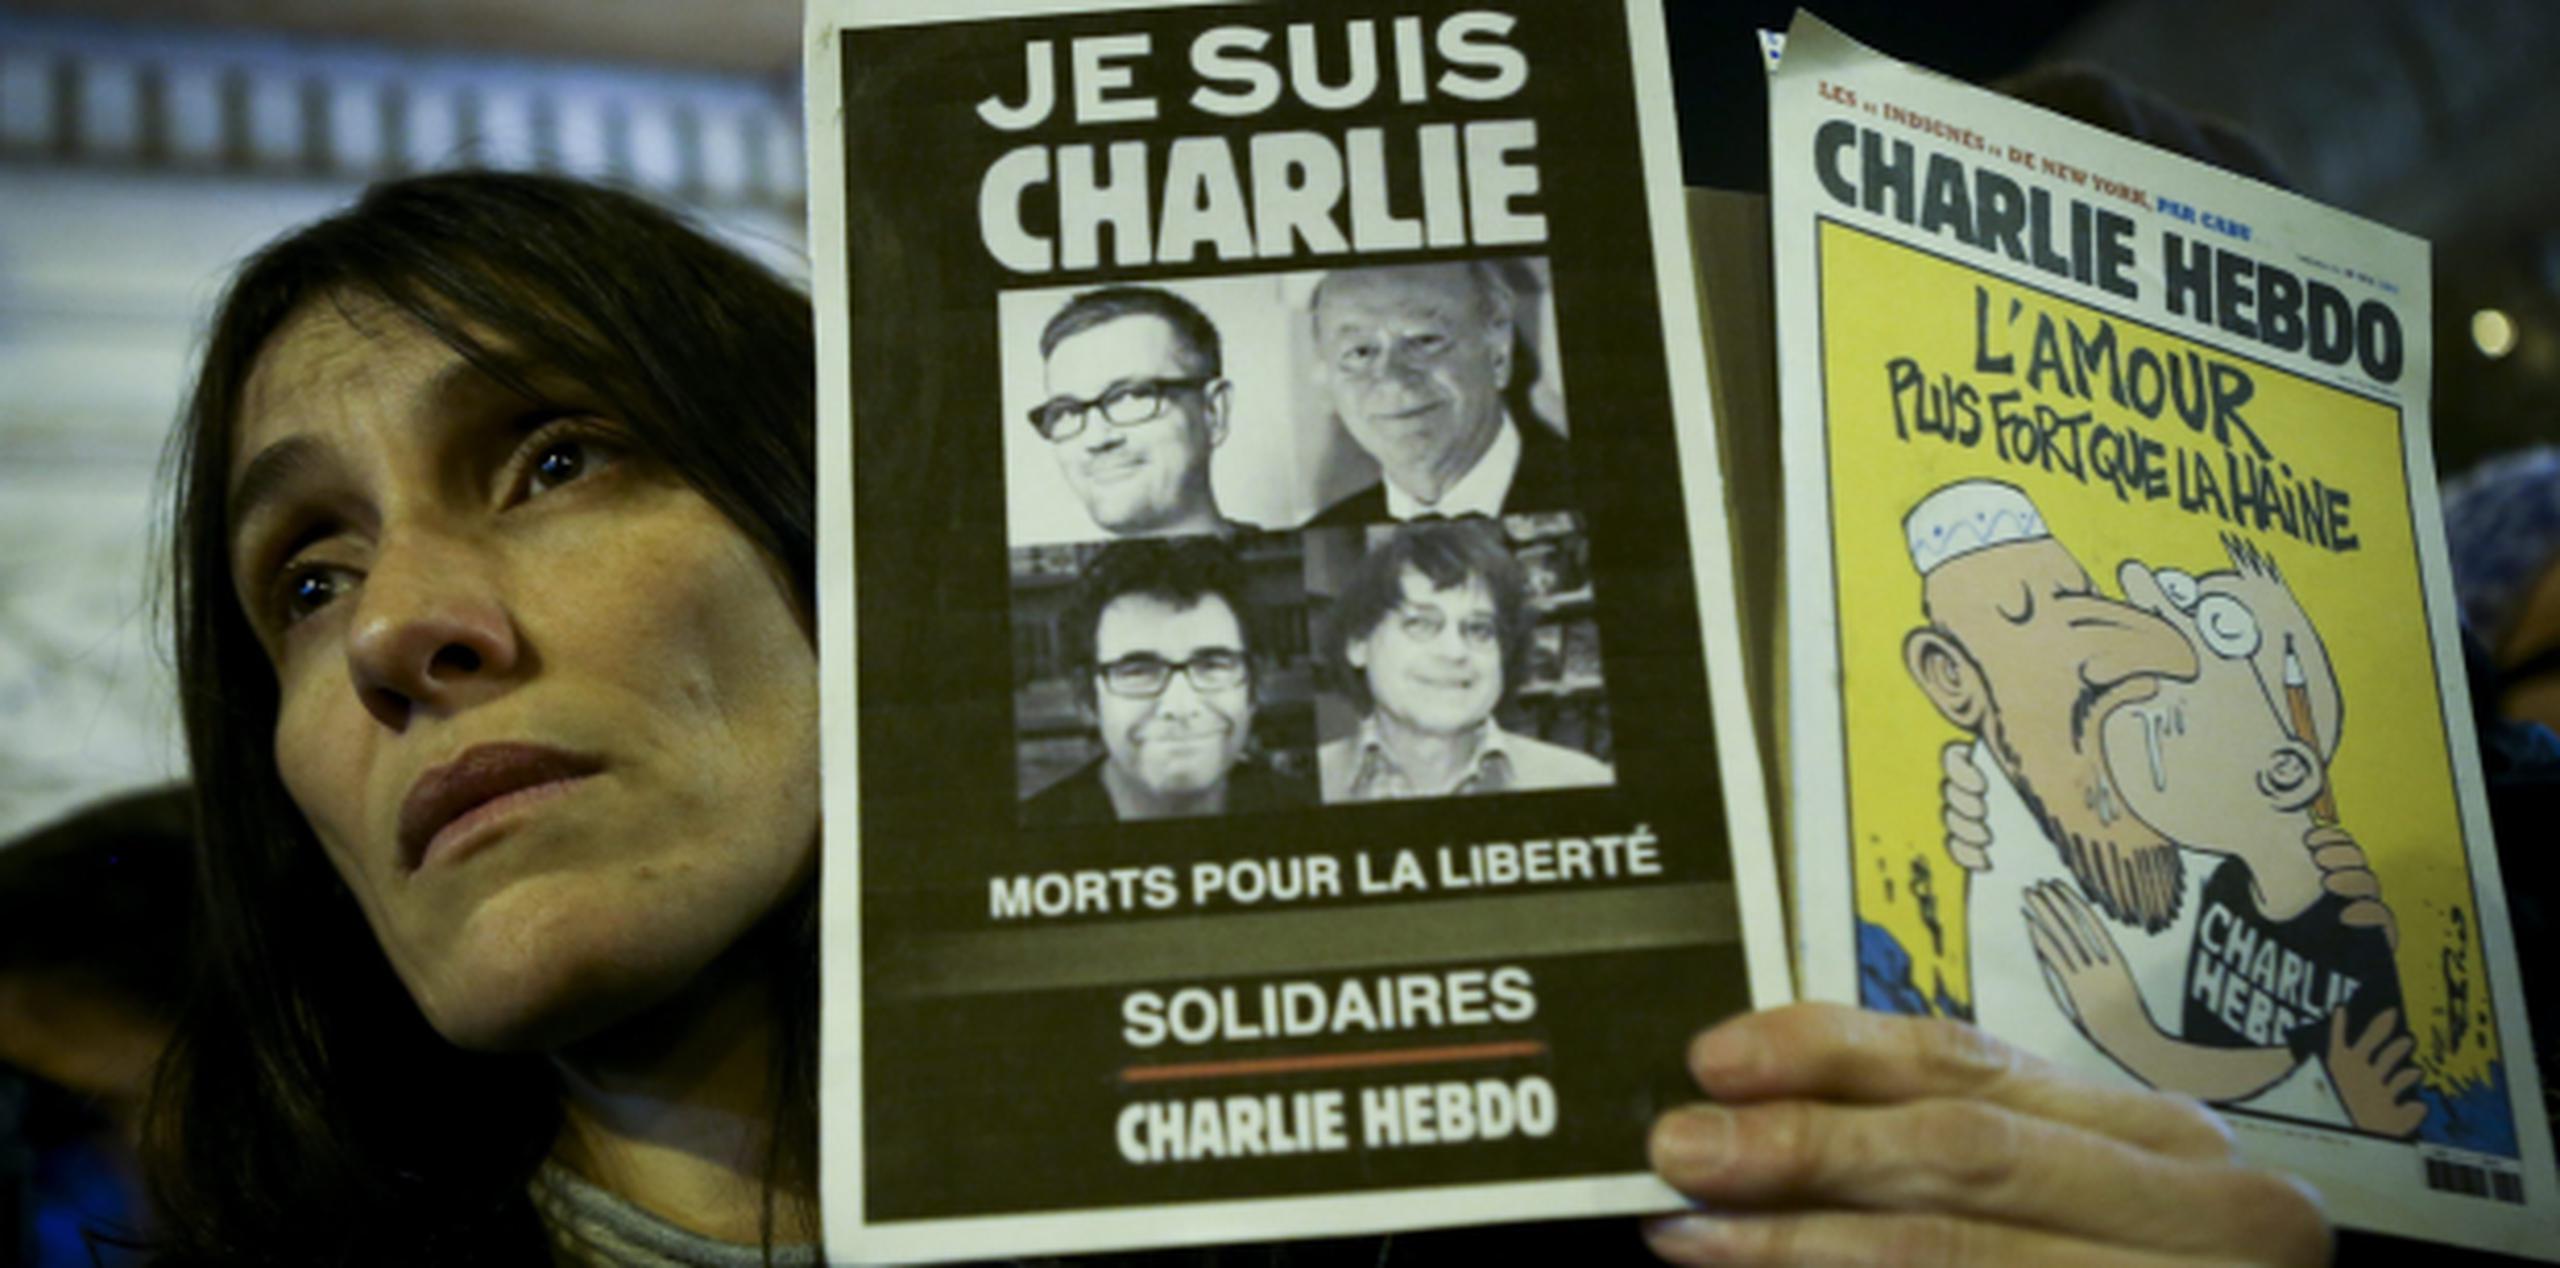 El presidente Francois Hollande hizo un llamado a la tolerancia luego del ataque terrorista más grave en el país en varias décadas. En la foto, una mujer sostiene carteles en los que se lee "Je Suis Charlie' (Yo soy Charlie) y una caricatura. (EFE)